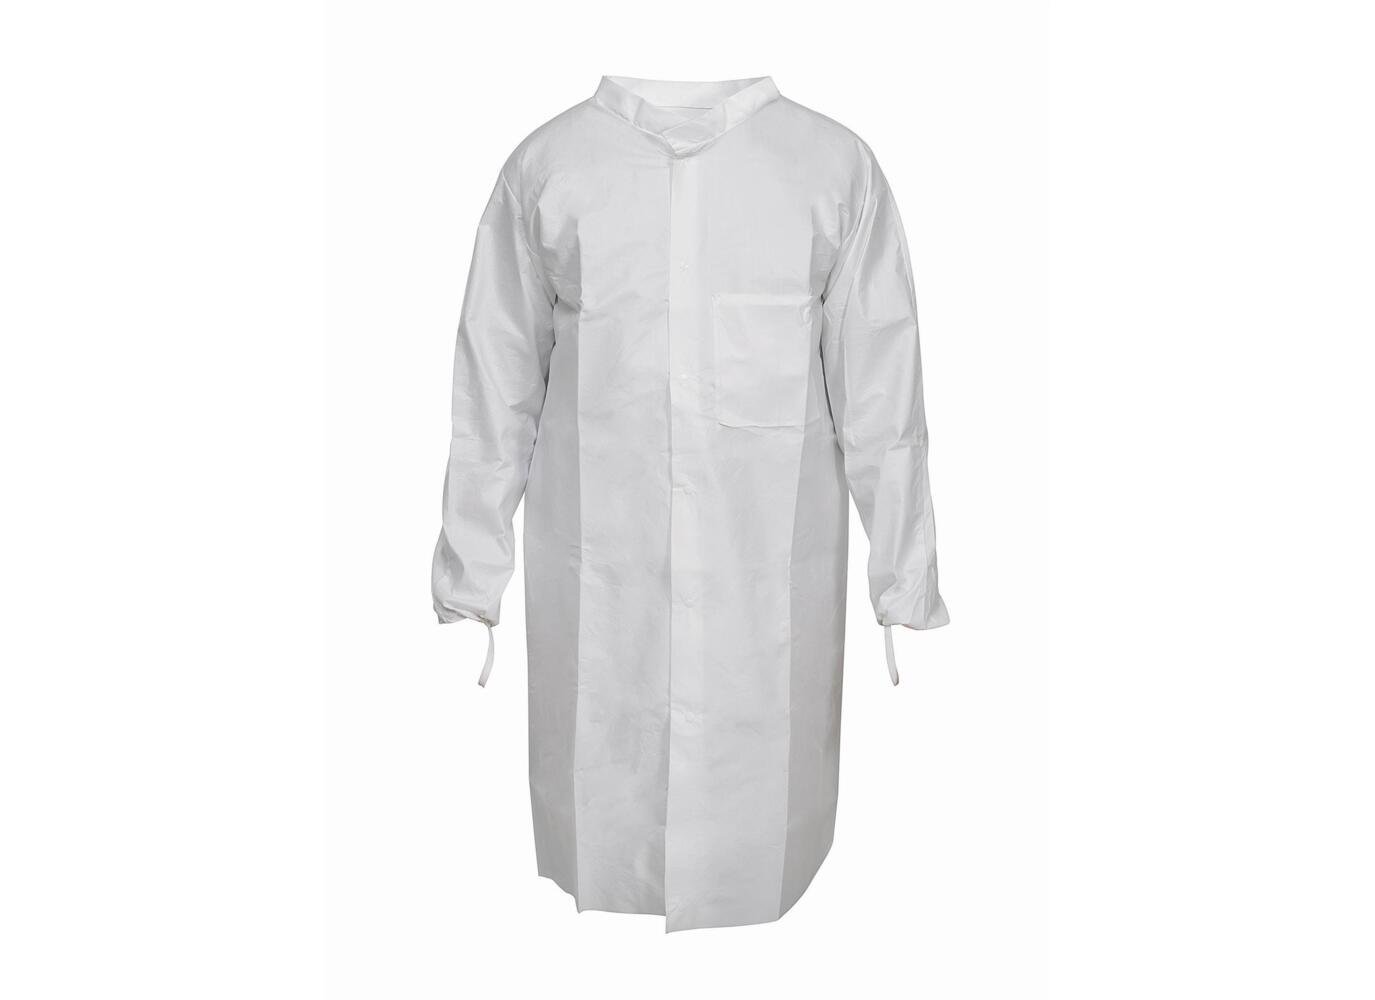 Kimtech™ A7 P+, Laboratory Coat 97730 - White, XL, 1x15 (15 total) - 97730